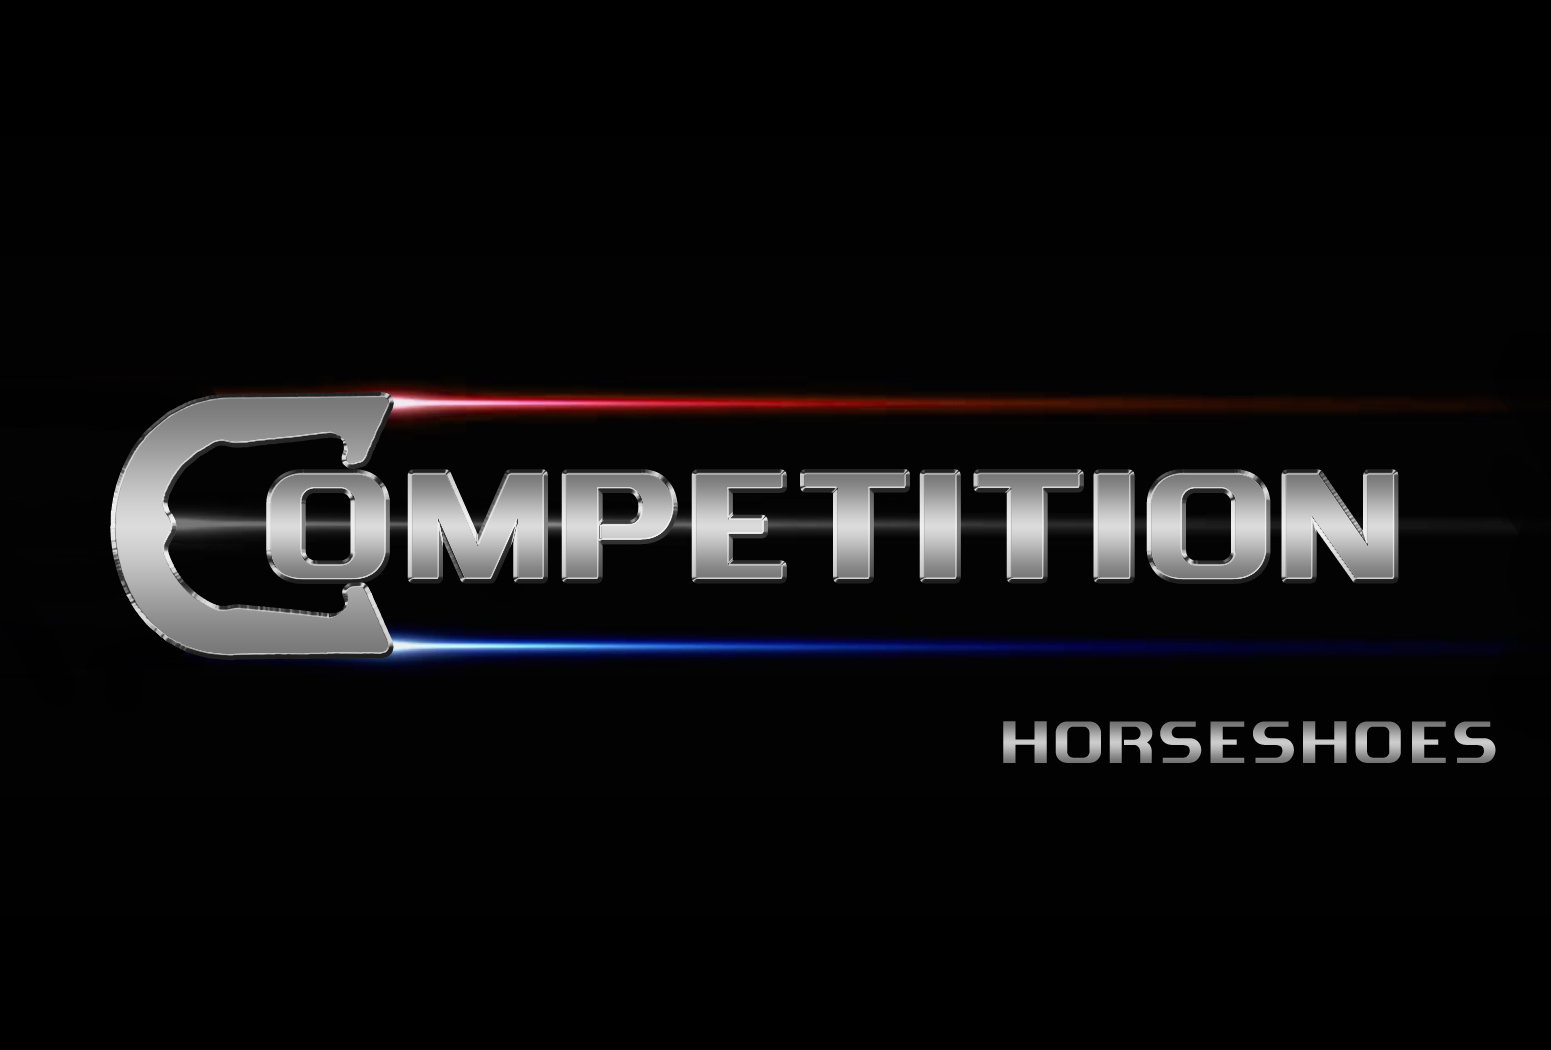 GORDON HORSESHOES - BLACK - Omega Horseshoe Co.